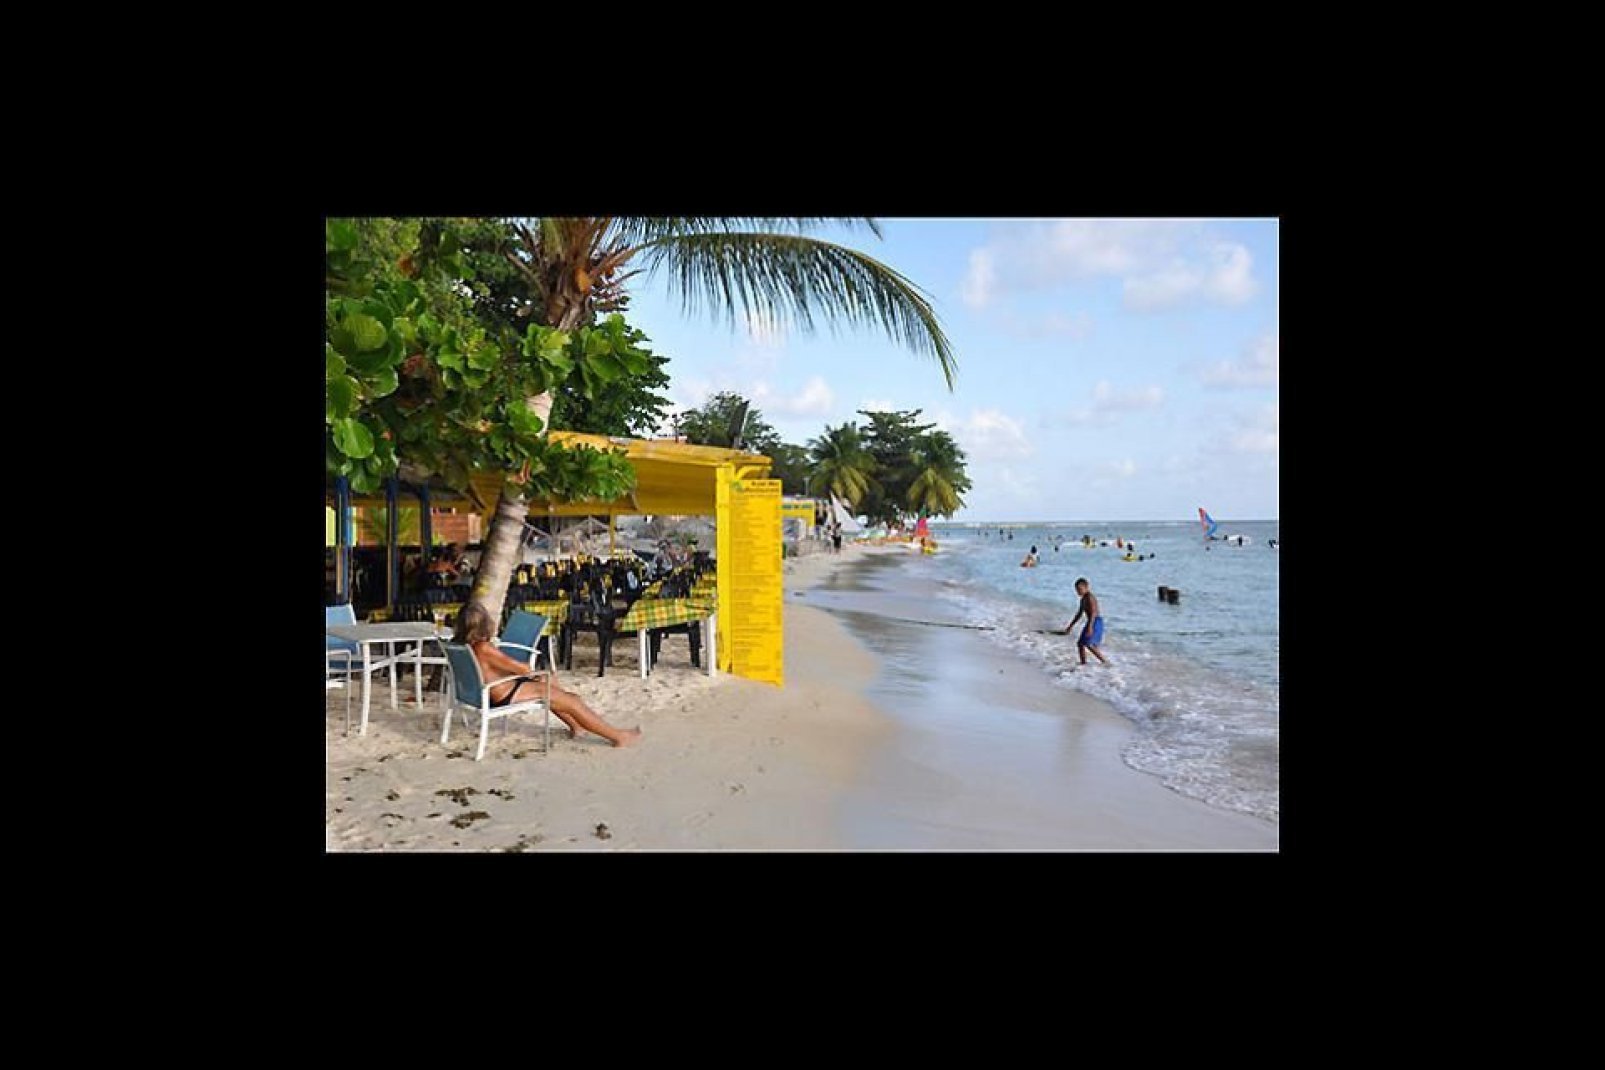 Santa Ana es la ciudad más turística de Martinica. Y sus magníficas playas contribuyen a ello.